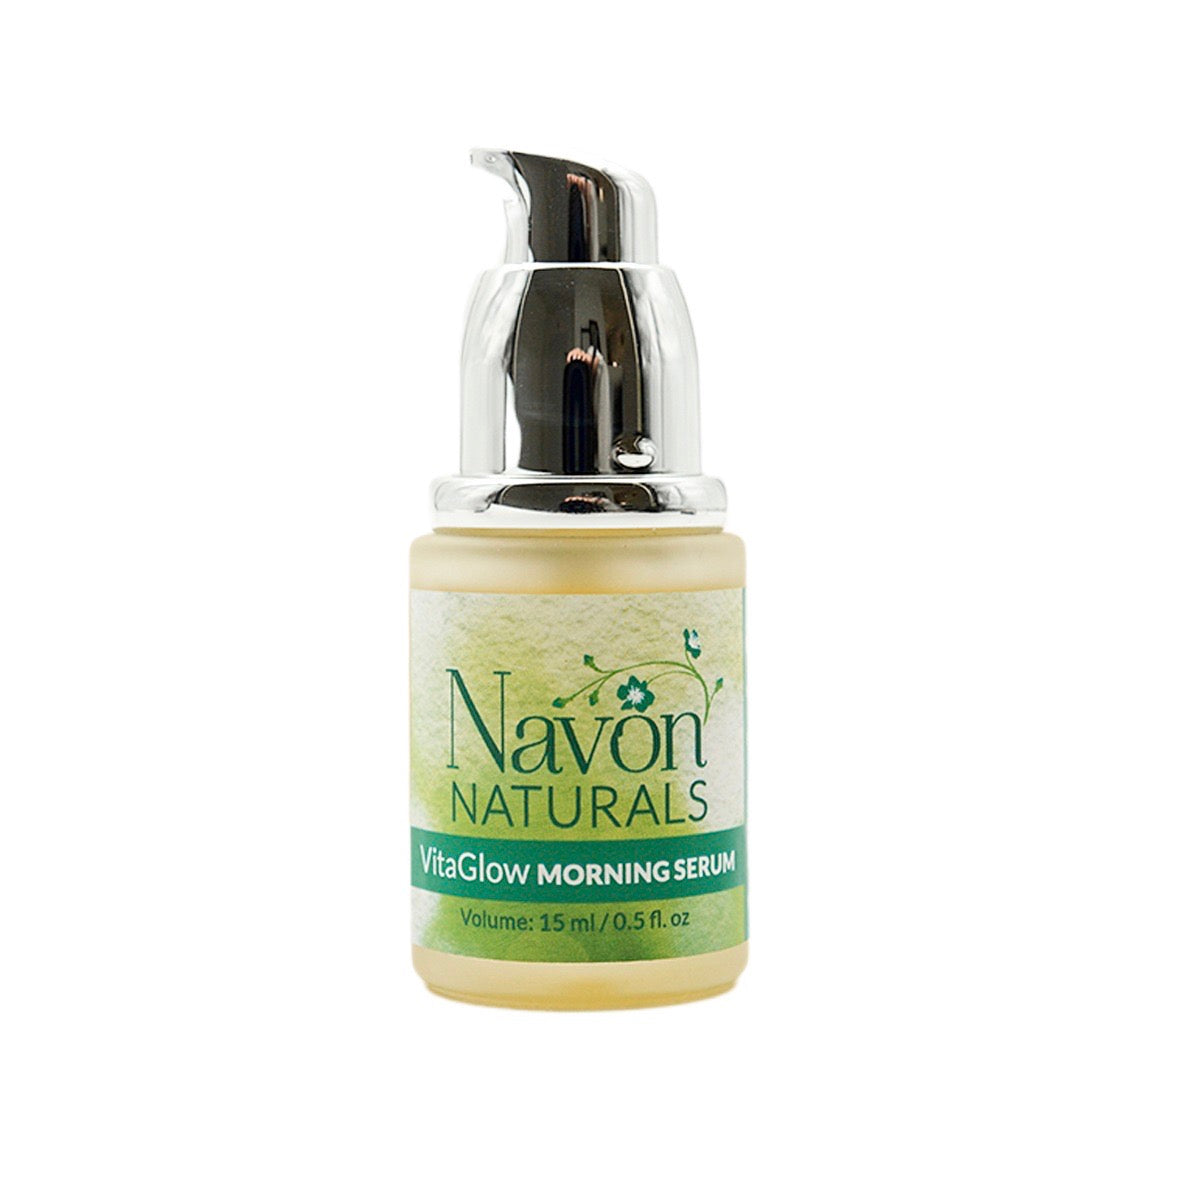 VitaGlow Energizing Morning Serum - Navon Naturals Skincare